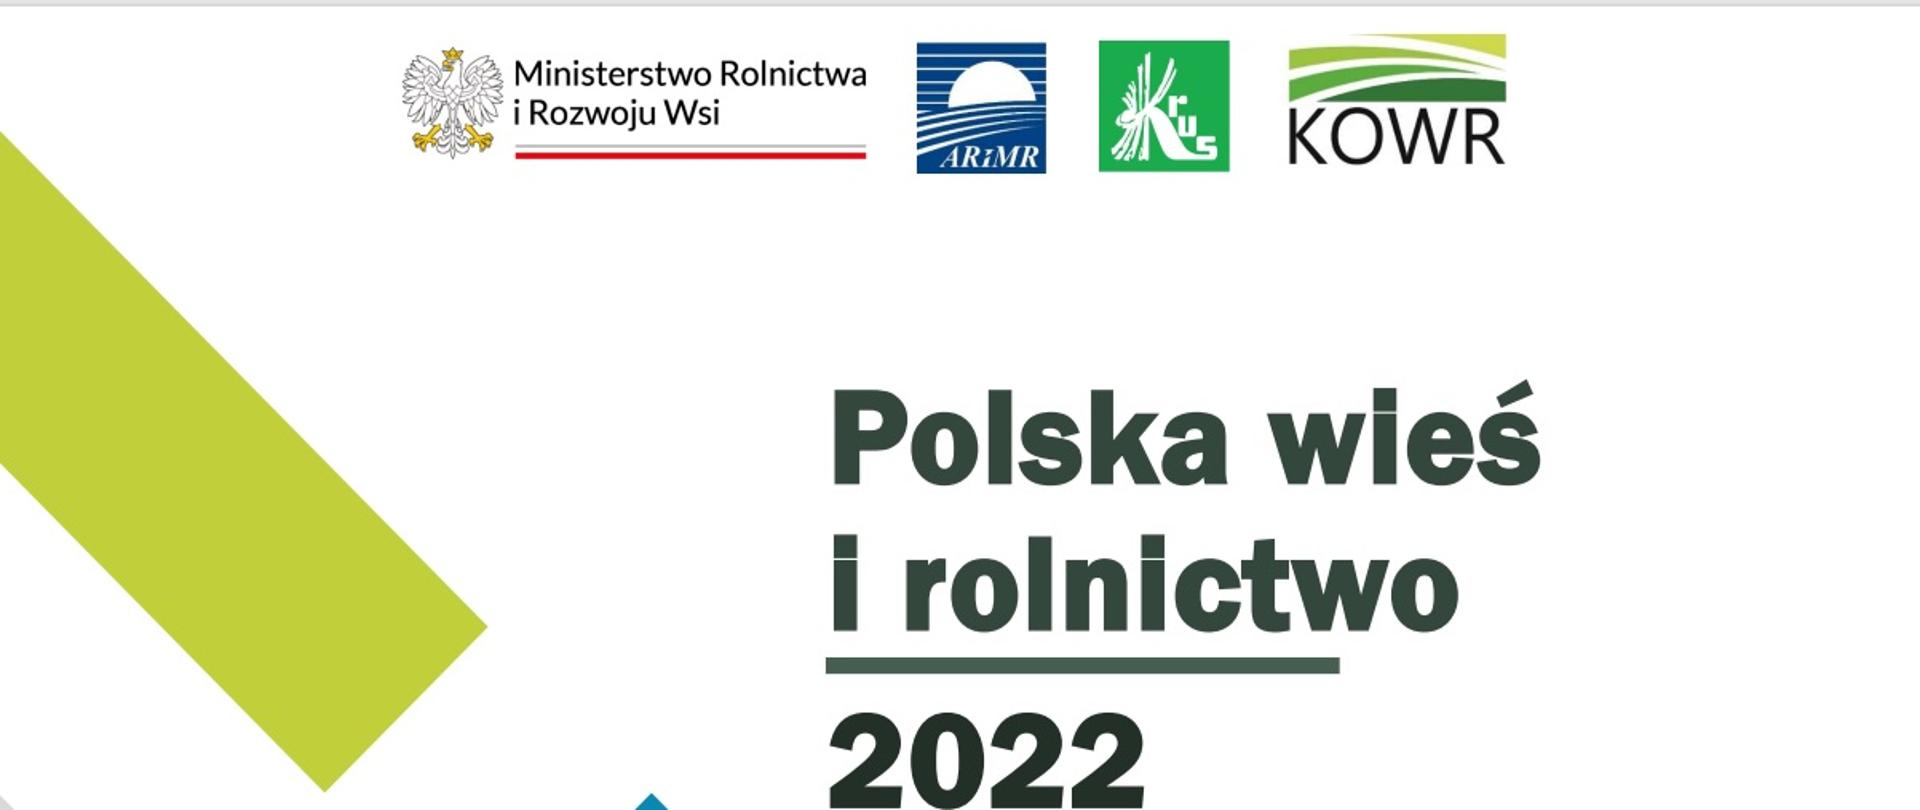 Polska wieś i rolnictwo 2022 - badanie opinii społecznej